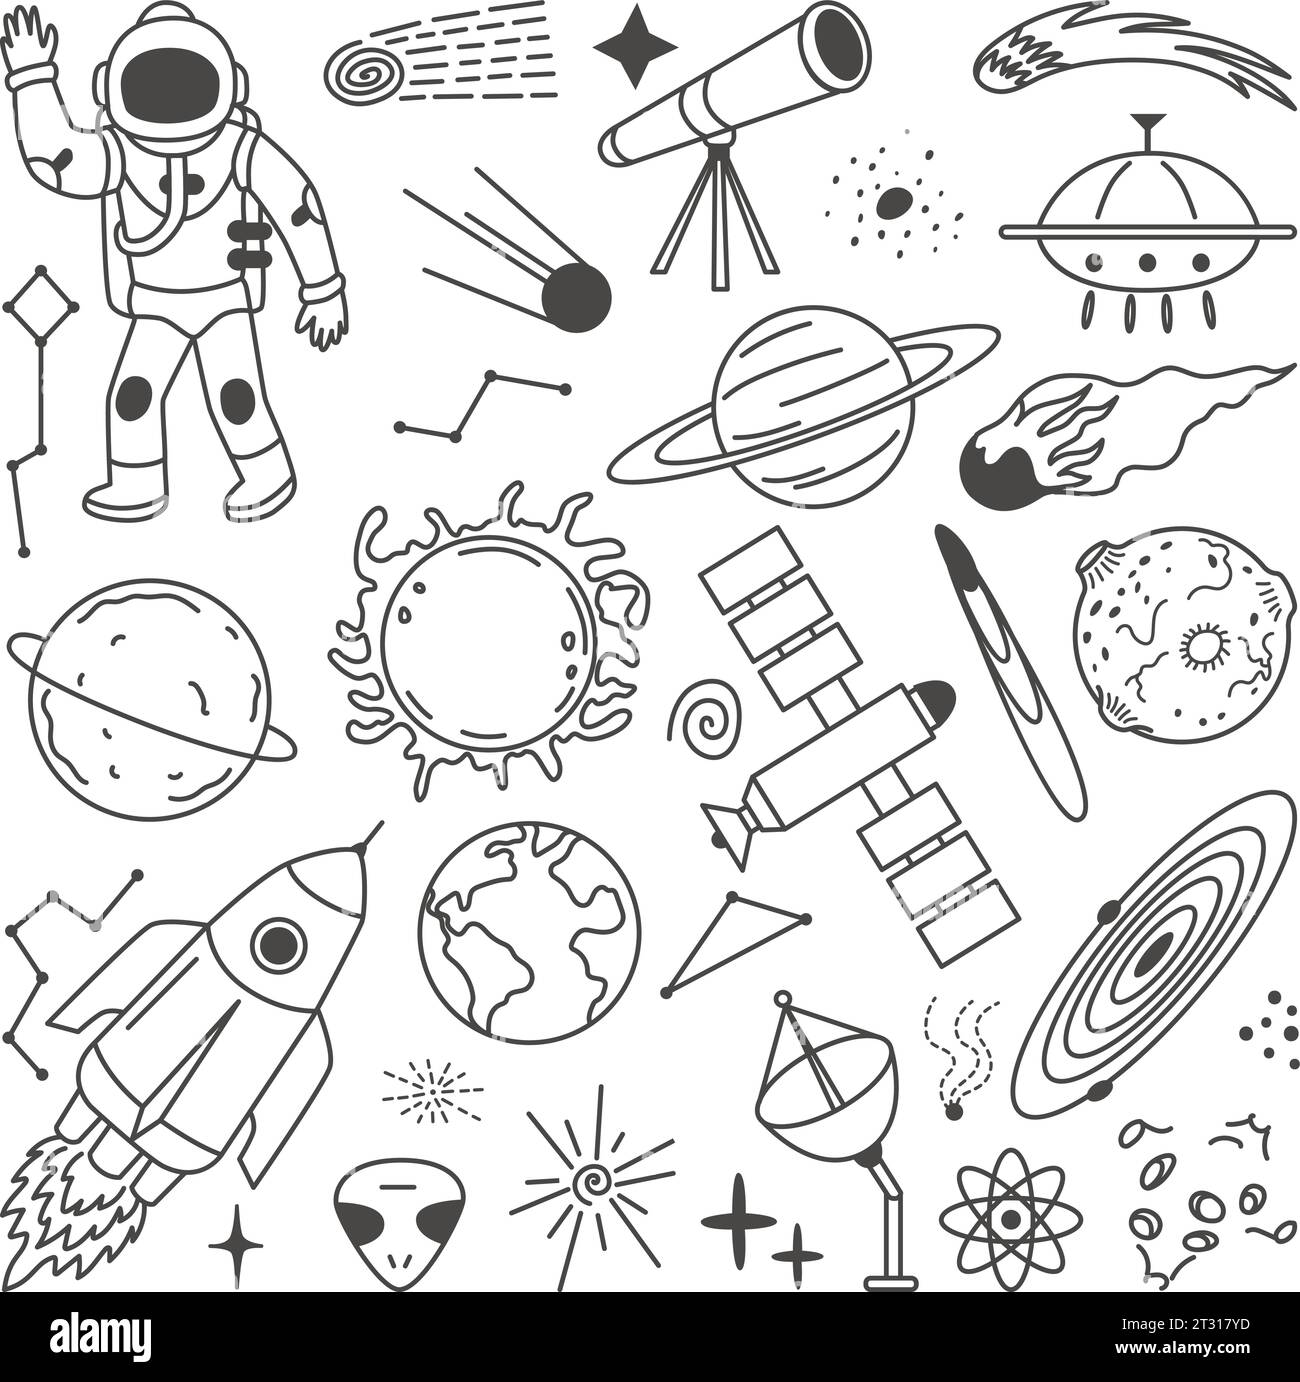 Space Doodle-Elemente. Planeten des Sonnensystems, Astronaut und Raketen. Isolierte Astronomieobjekte, himmlisches grafisches Clipart. Neoterische Vektorsammlung Stock Vektor